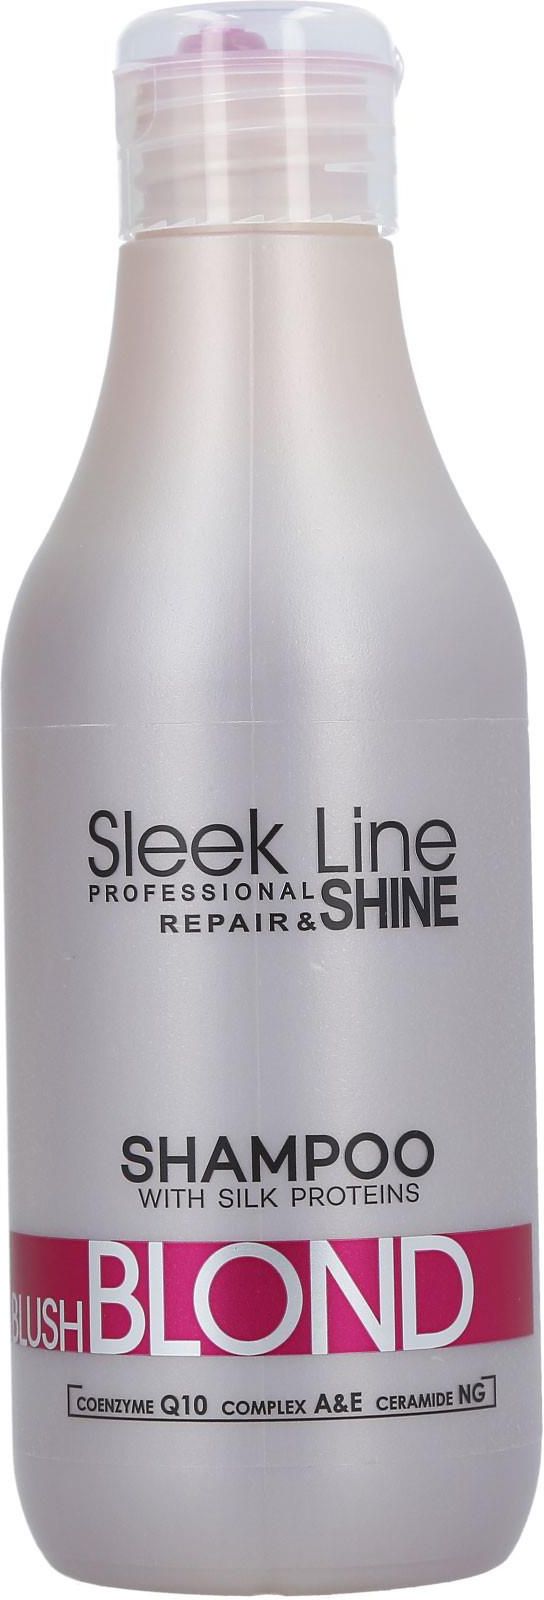 slek line szampon ceneo